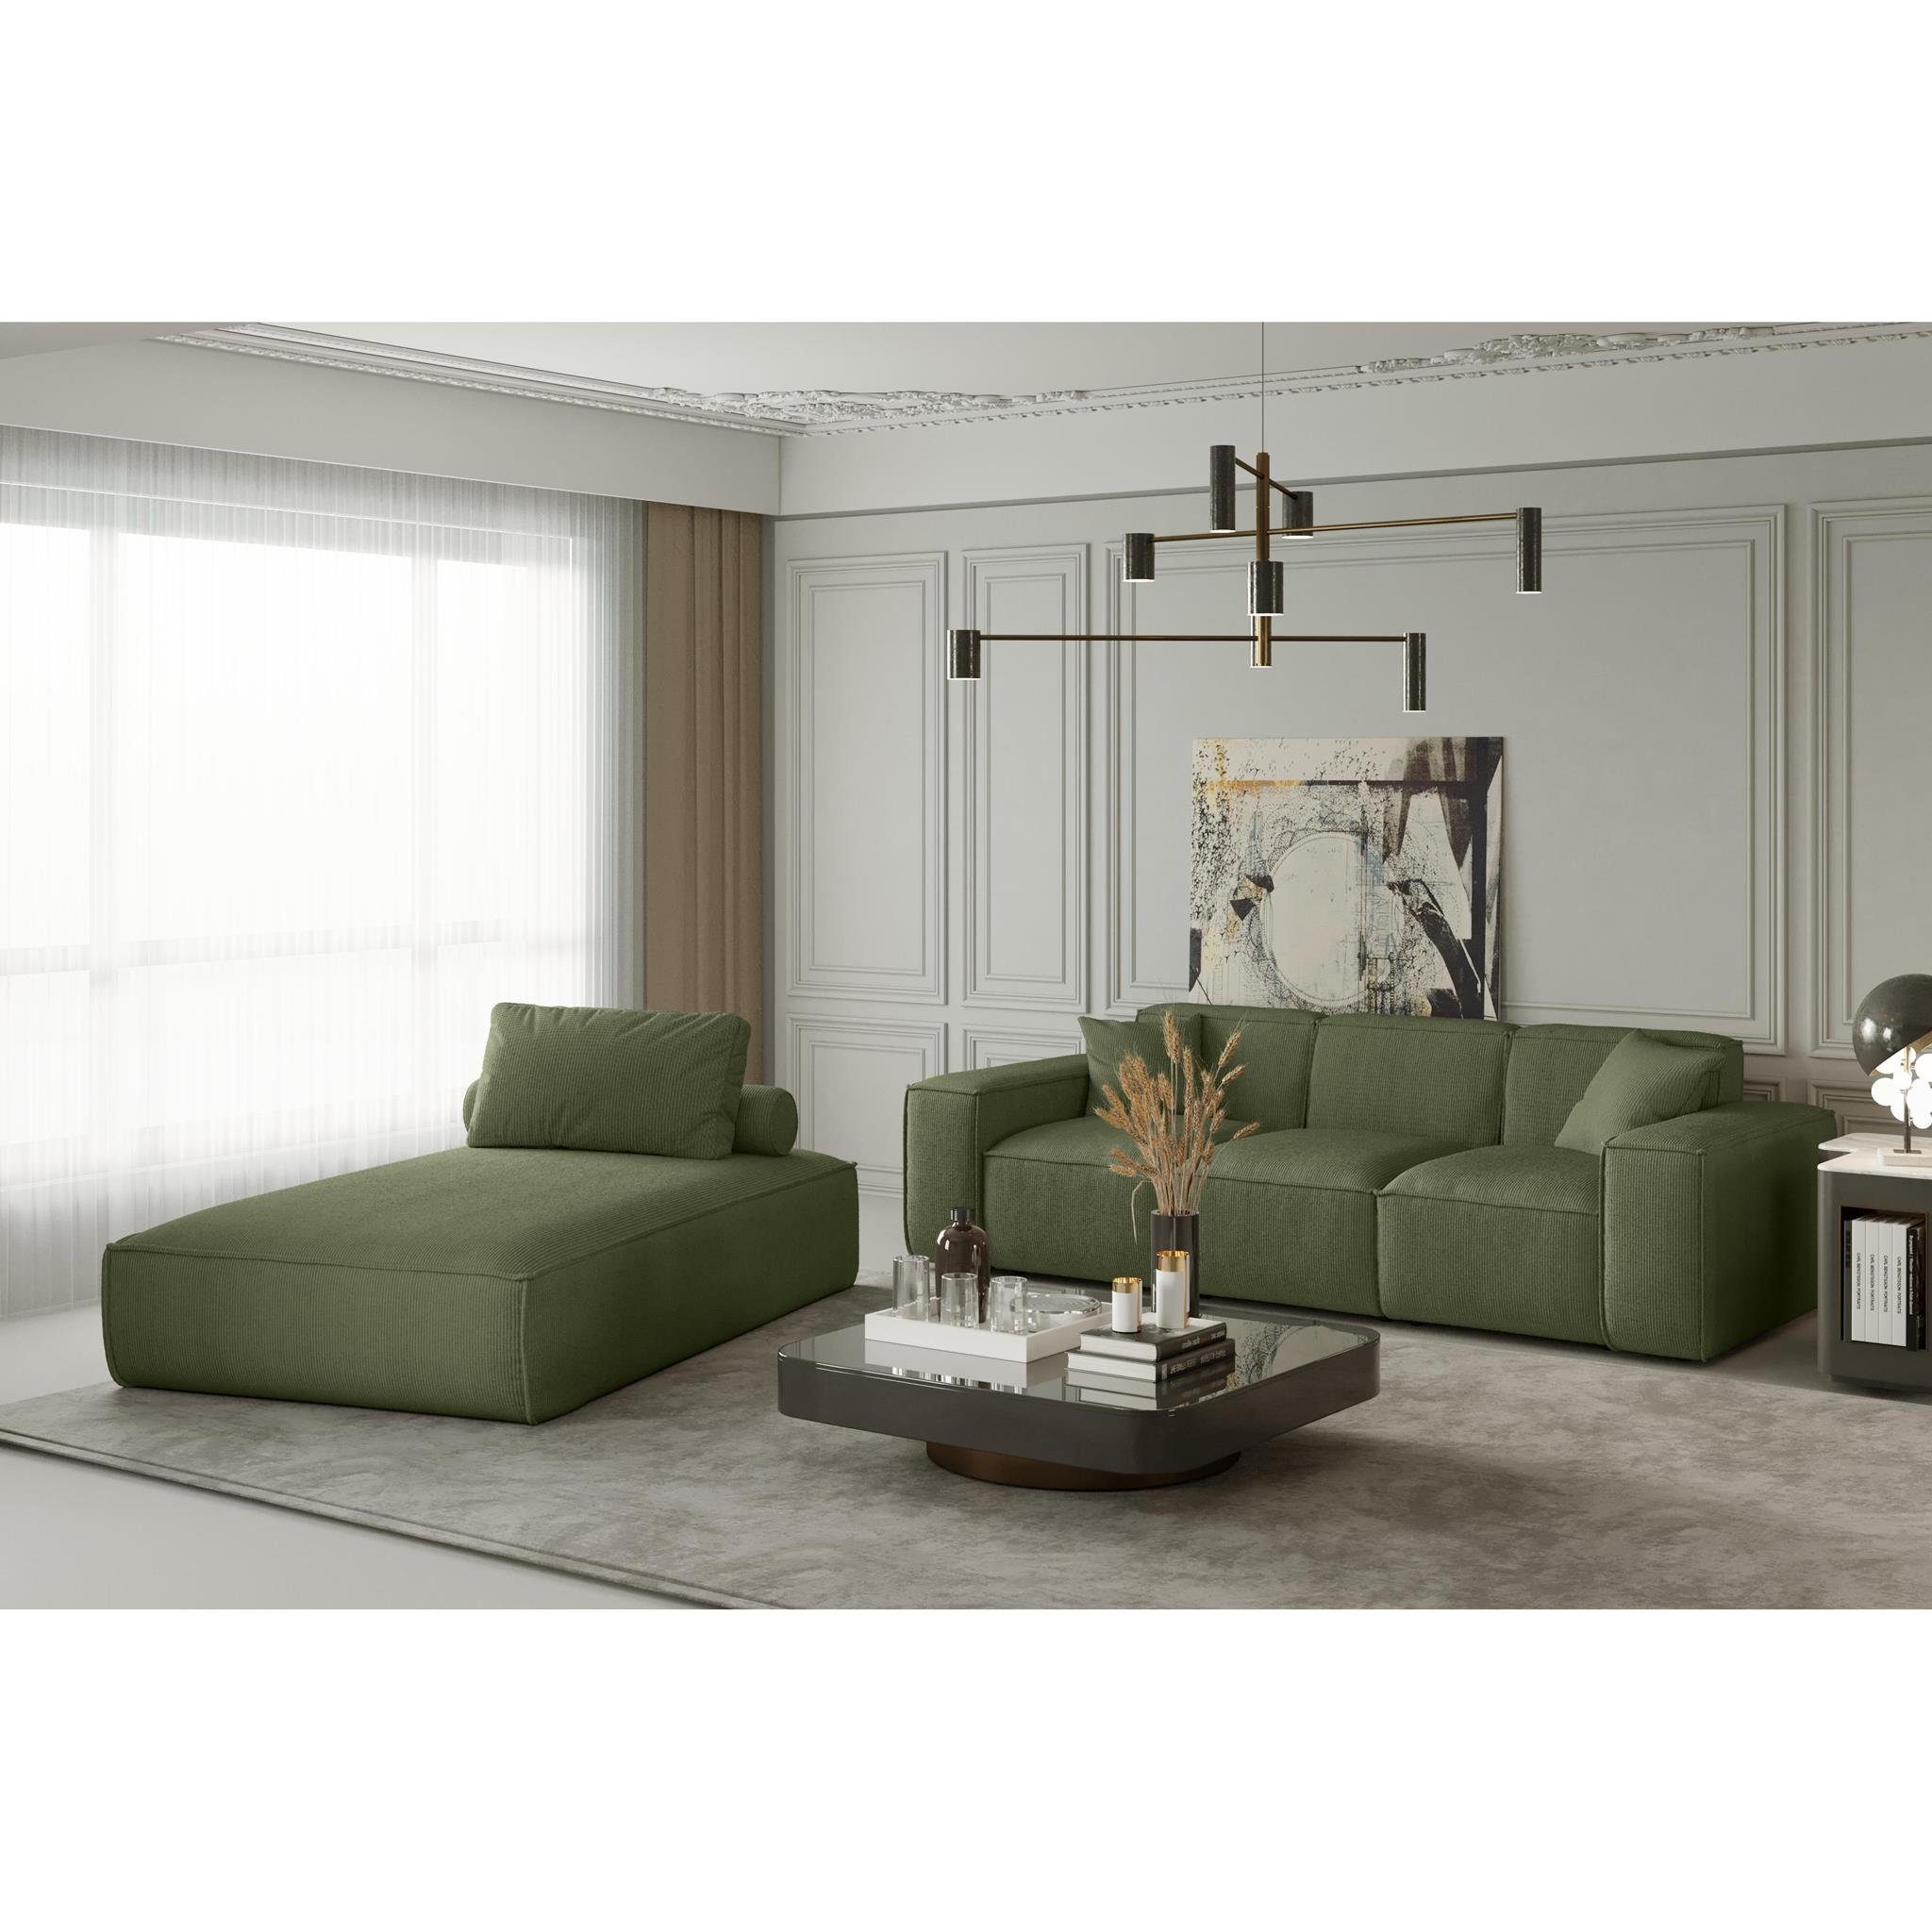 Beautysofa Relaxliege Lugano, mit Lounge mit Sessel oder Wellenfedern, modern, Cord- zwei Kissen gepolstert Velvetstoff